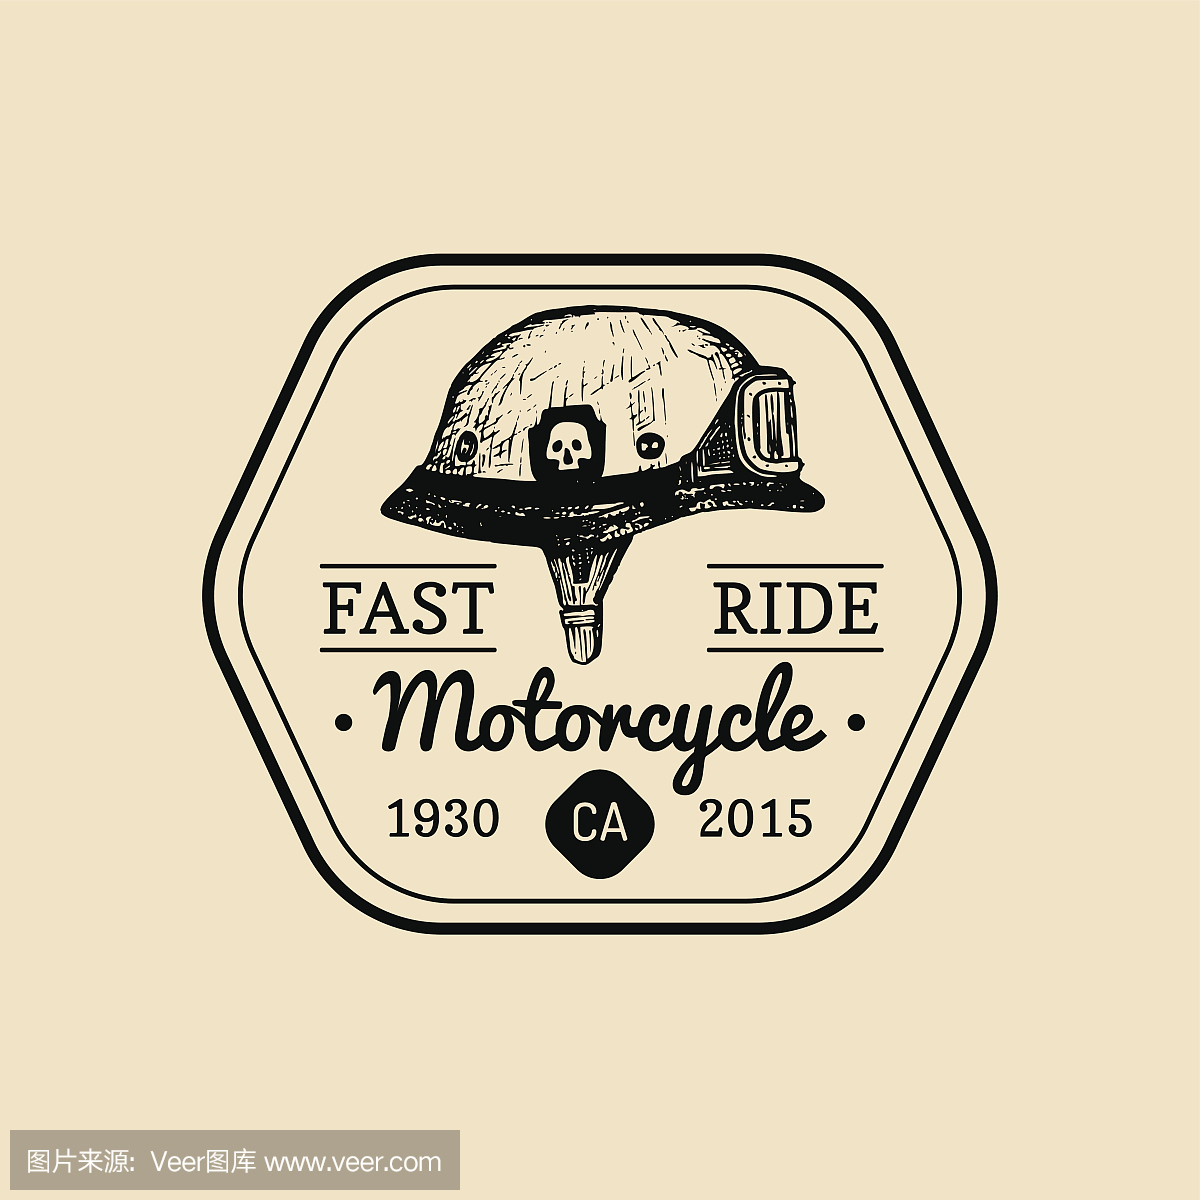 快速骑自行车专卖店图标。摩托车俱乐部标志。